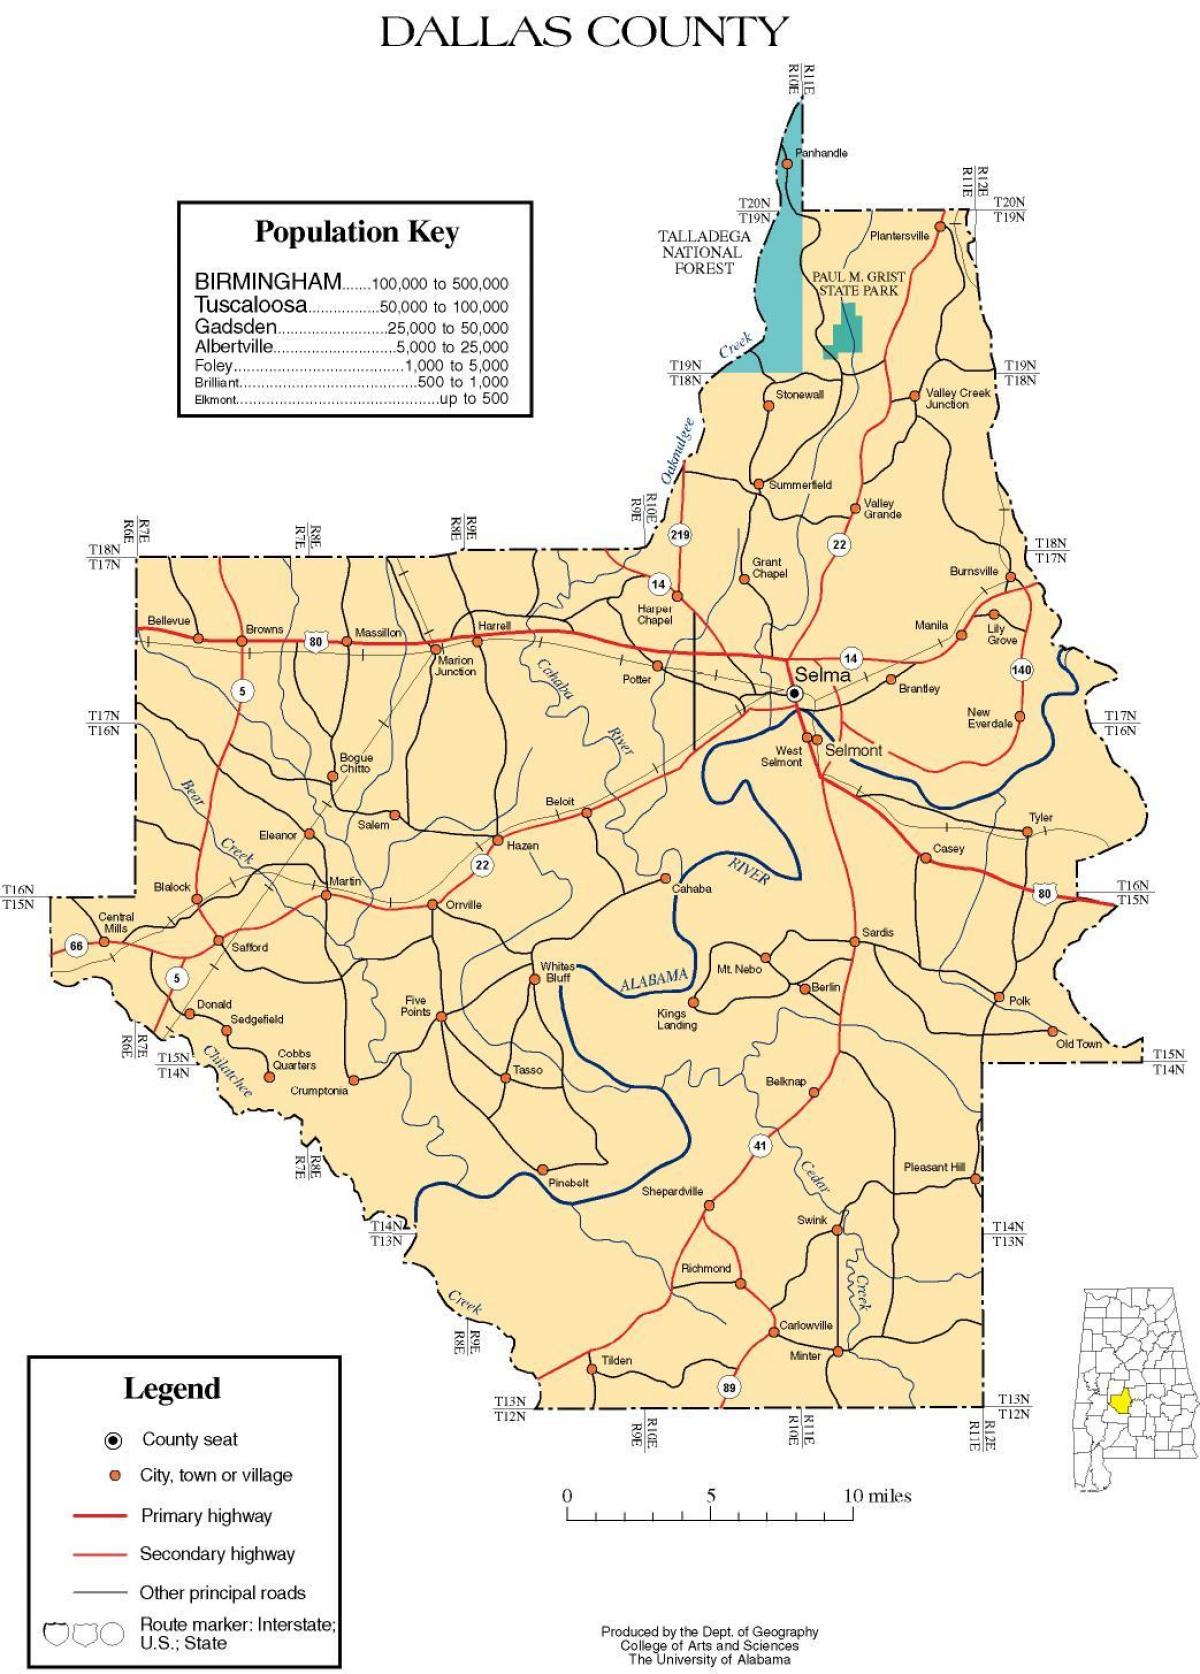 χάρτης της Dallas county